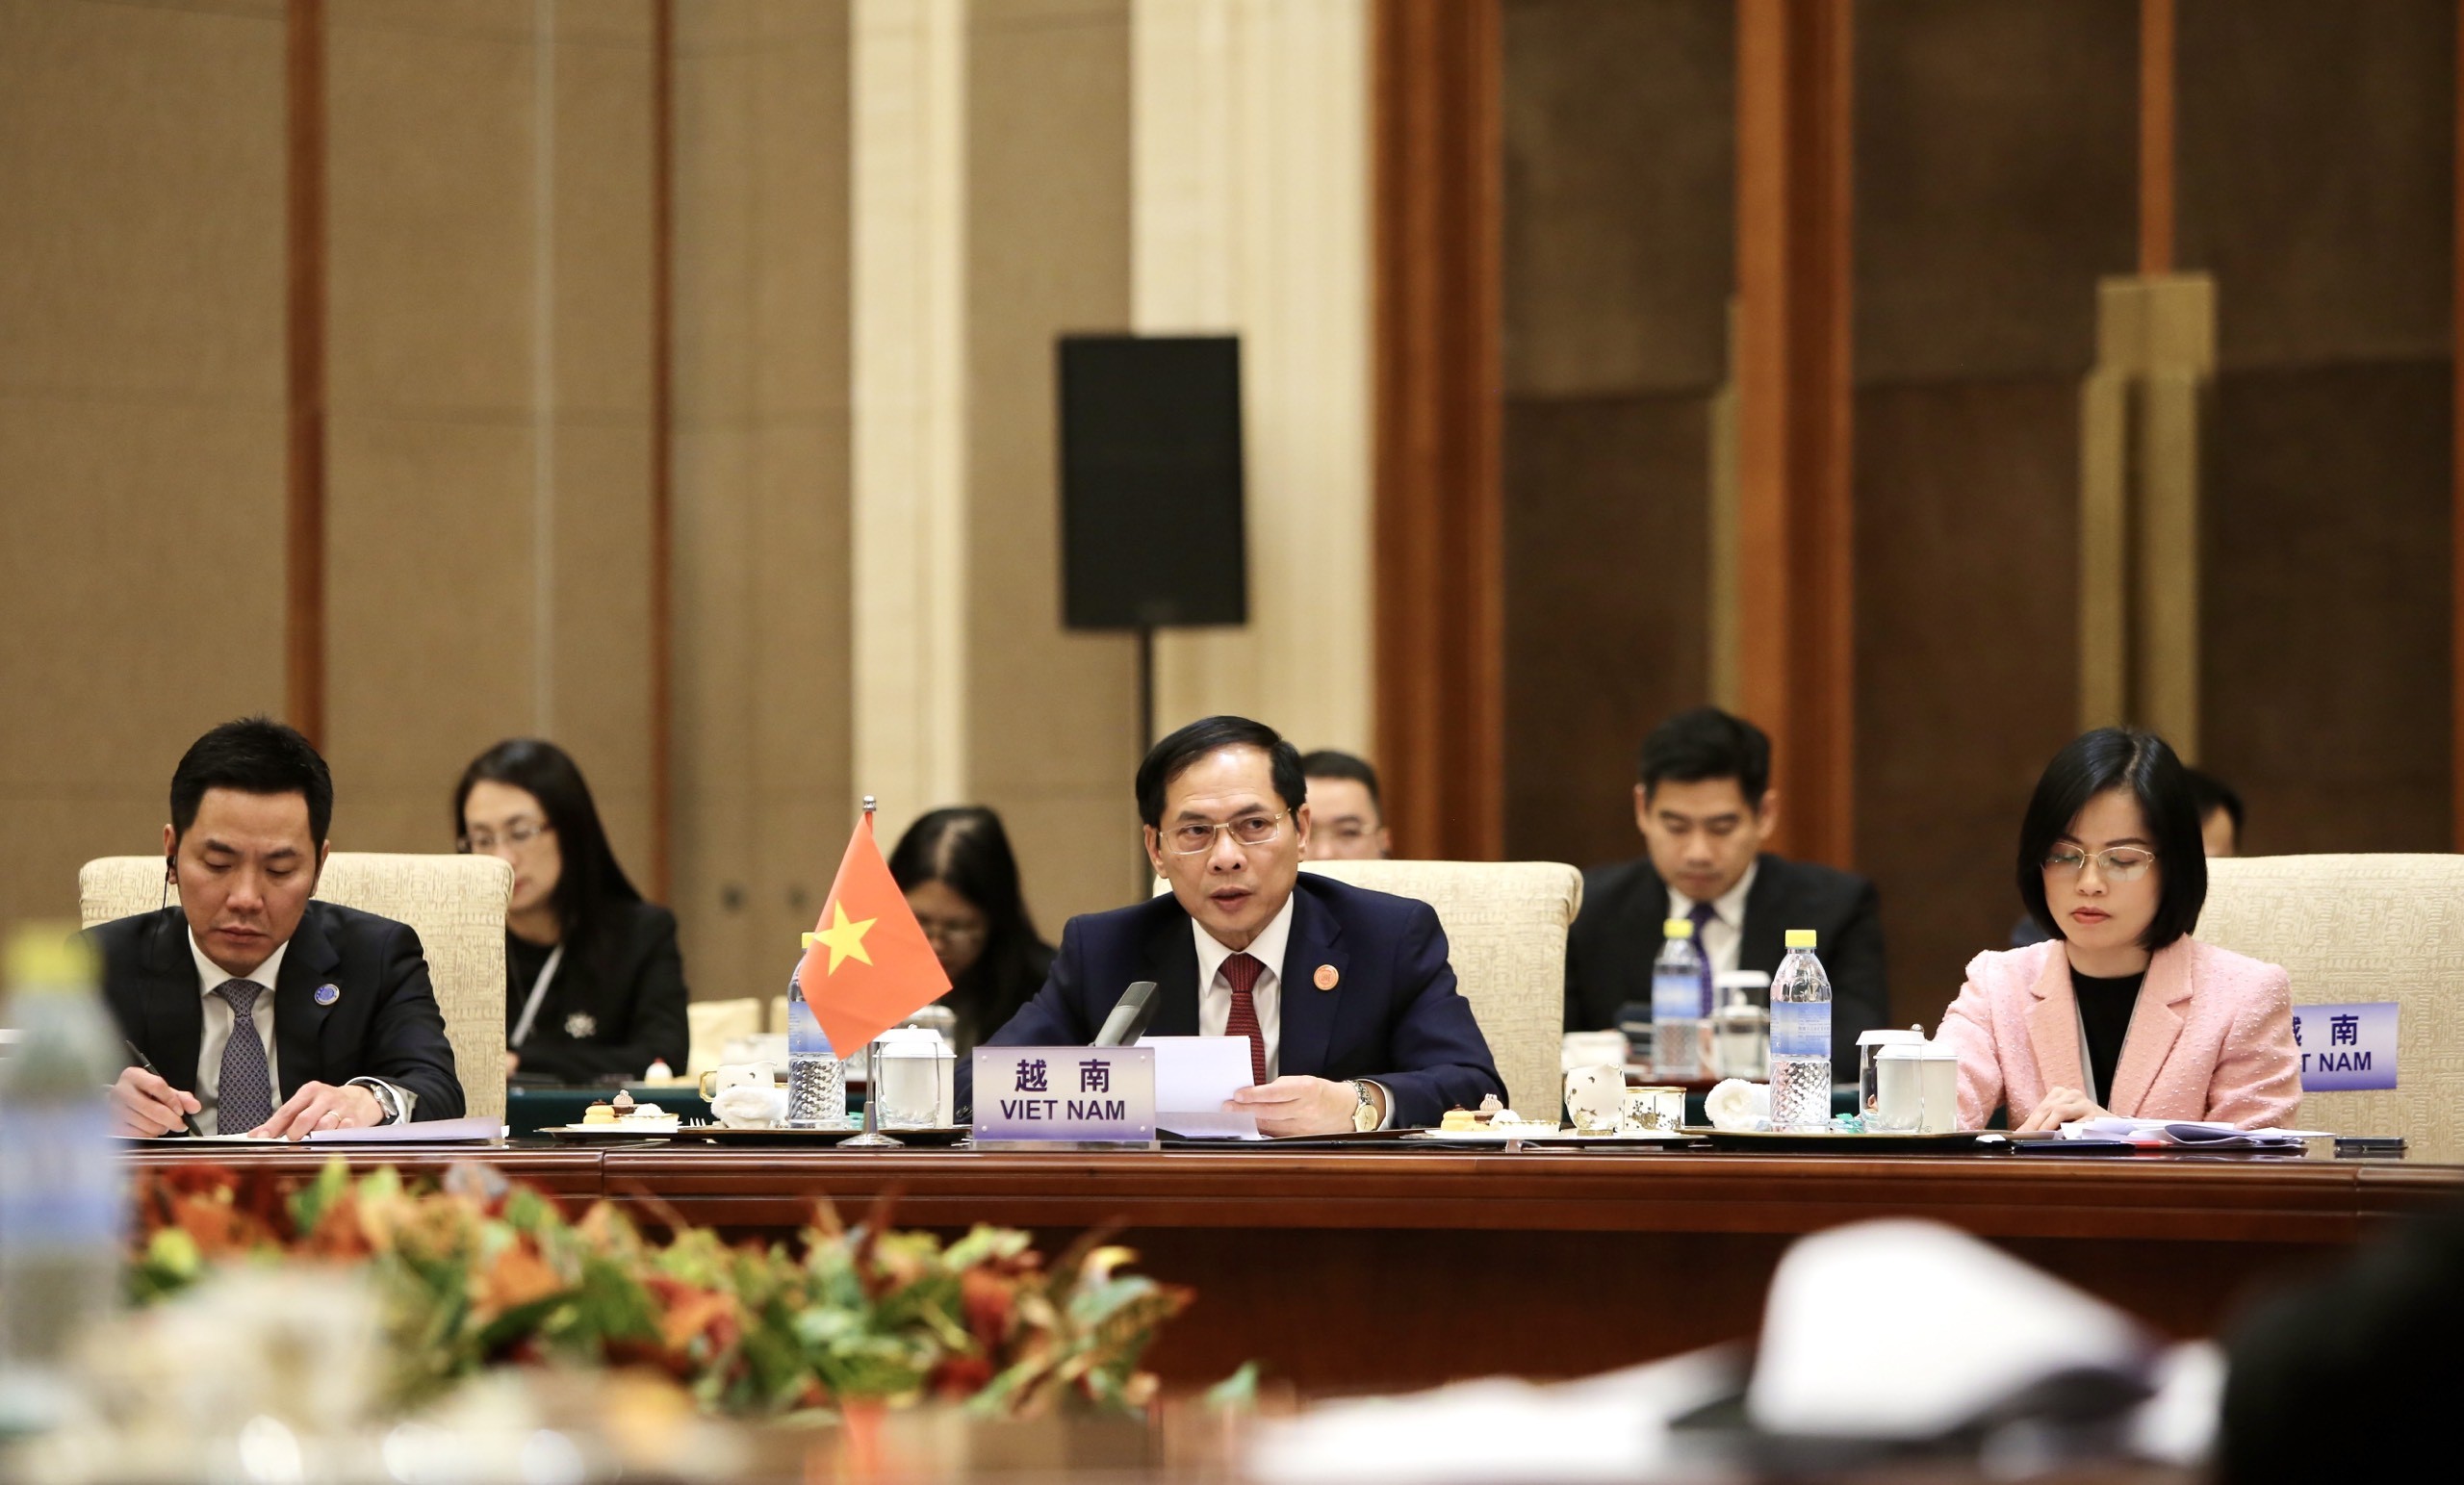 Tiêu điểm - Việt Nam đề xuất 4 nhóm ưu tiên hợp tác tại Hội nghị Ngoại trưởng Mekong - Lan Thương